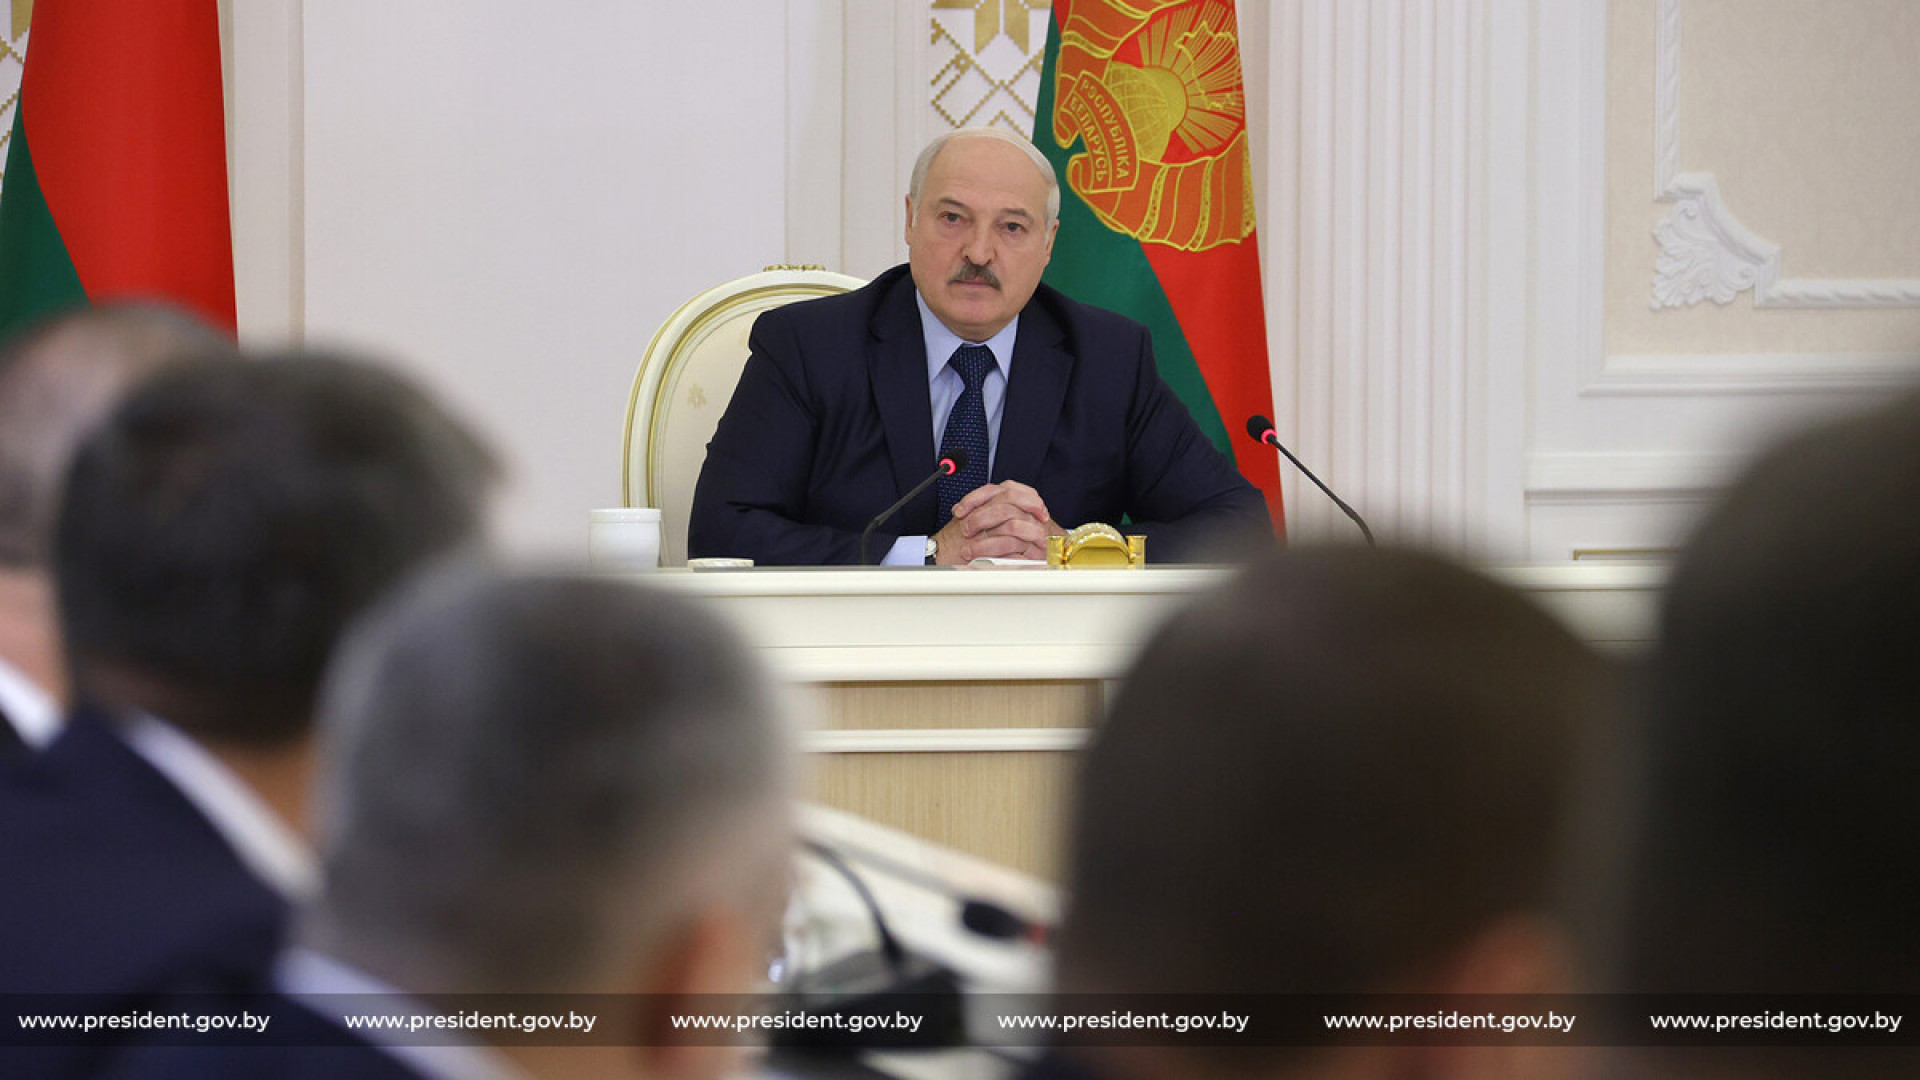 Свежие новости в беларуси и россии. Лукашенко 2022.